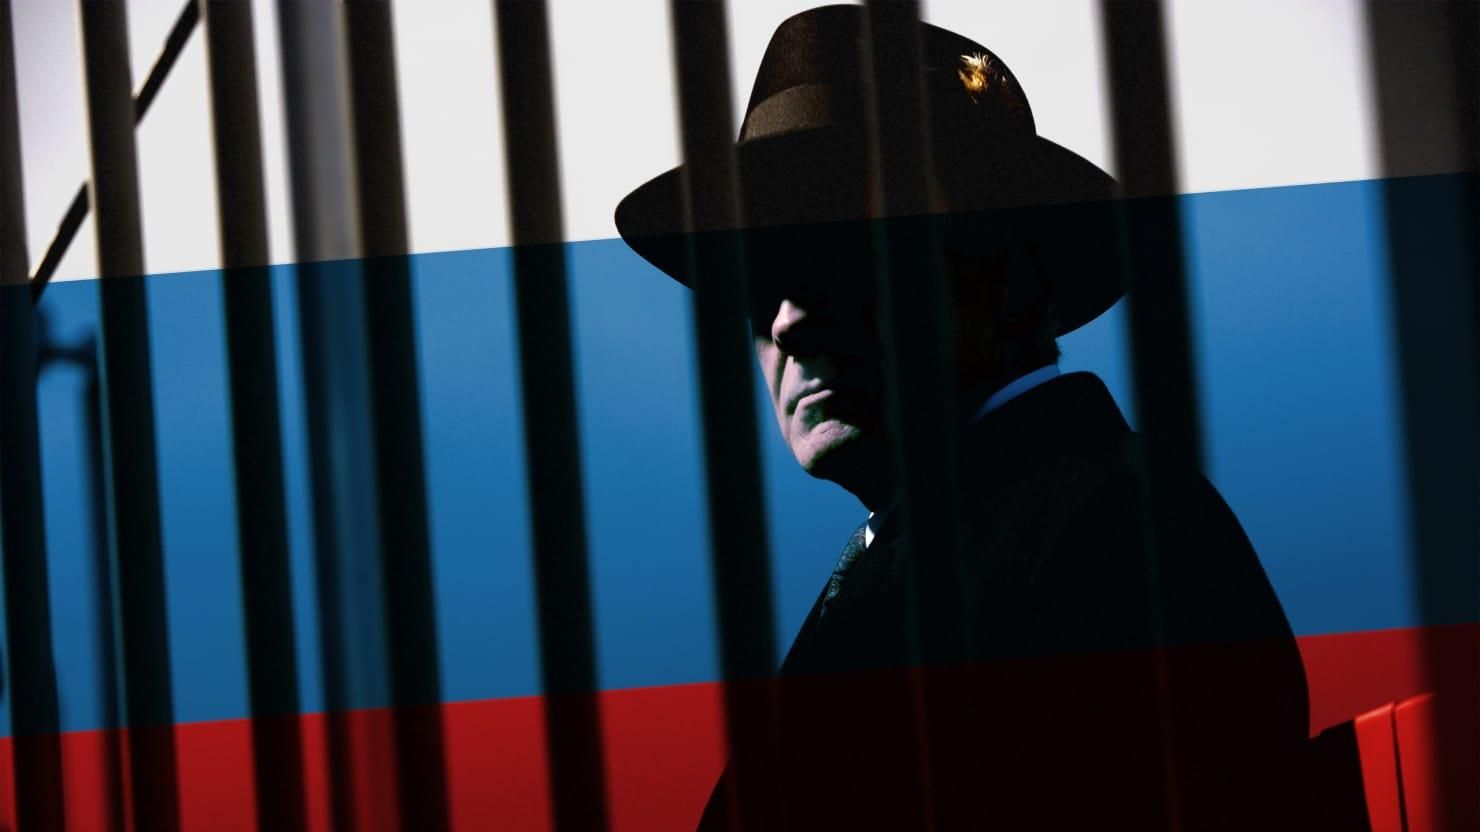 Словакия выдворила российского дипломата по подозрению в шпионаже